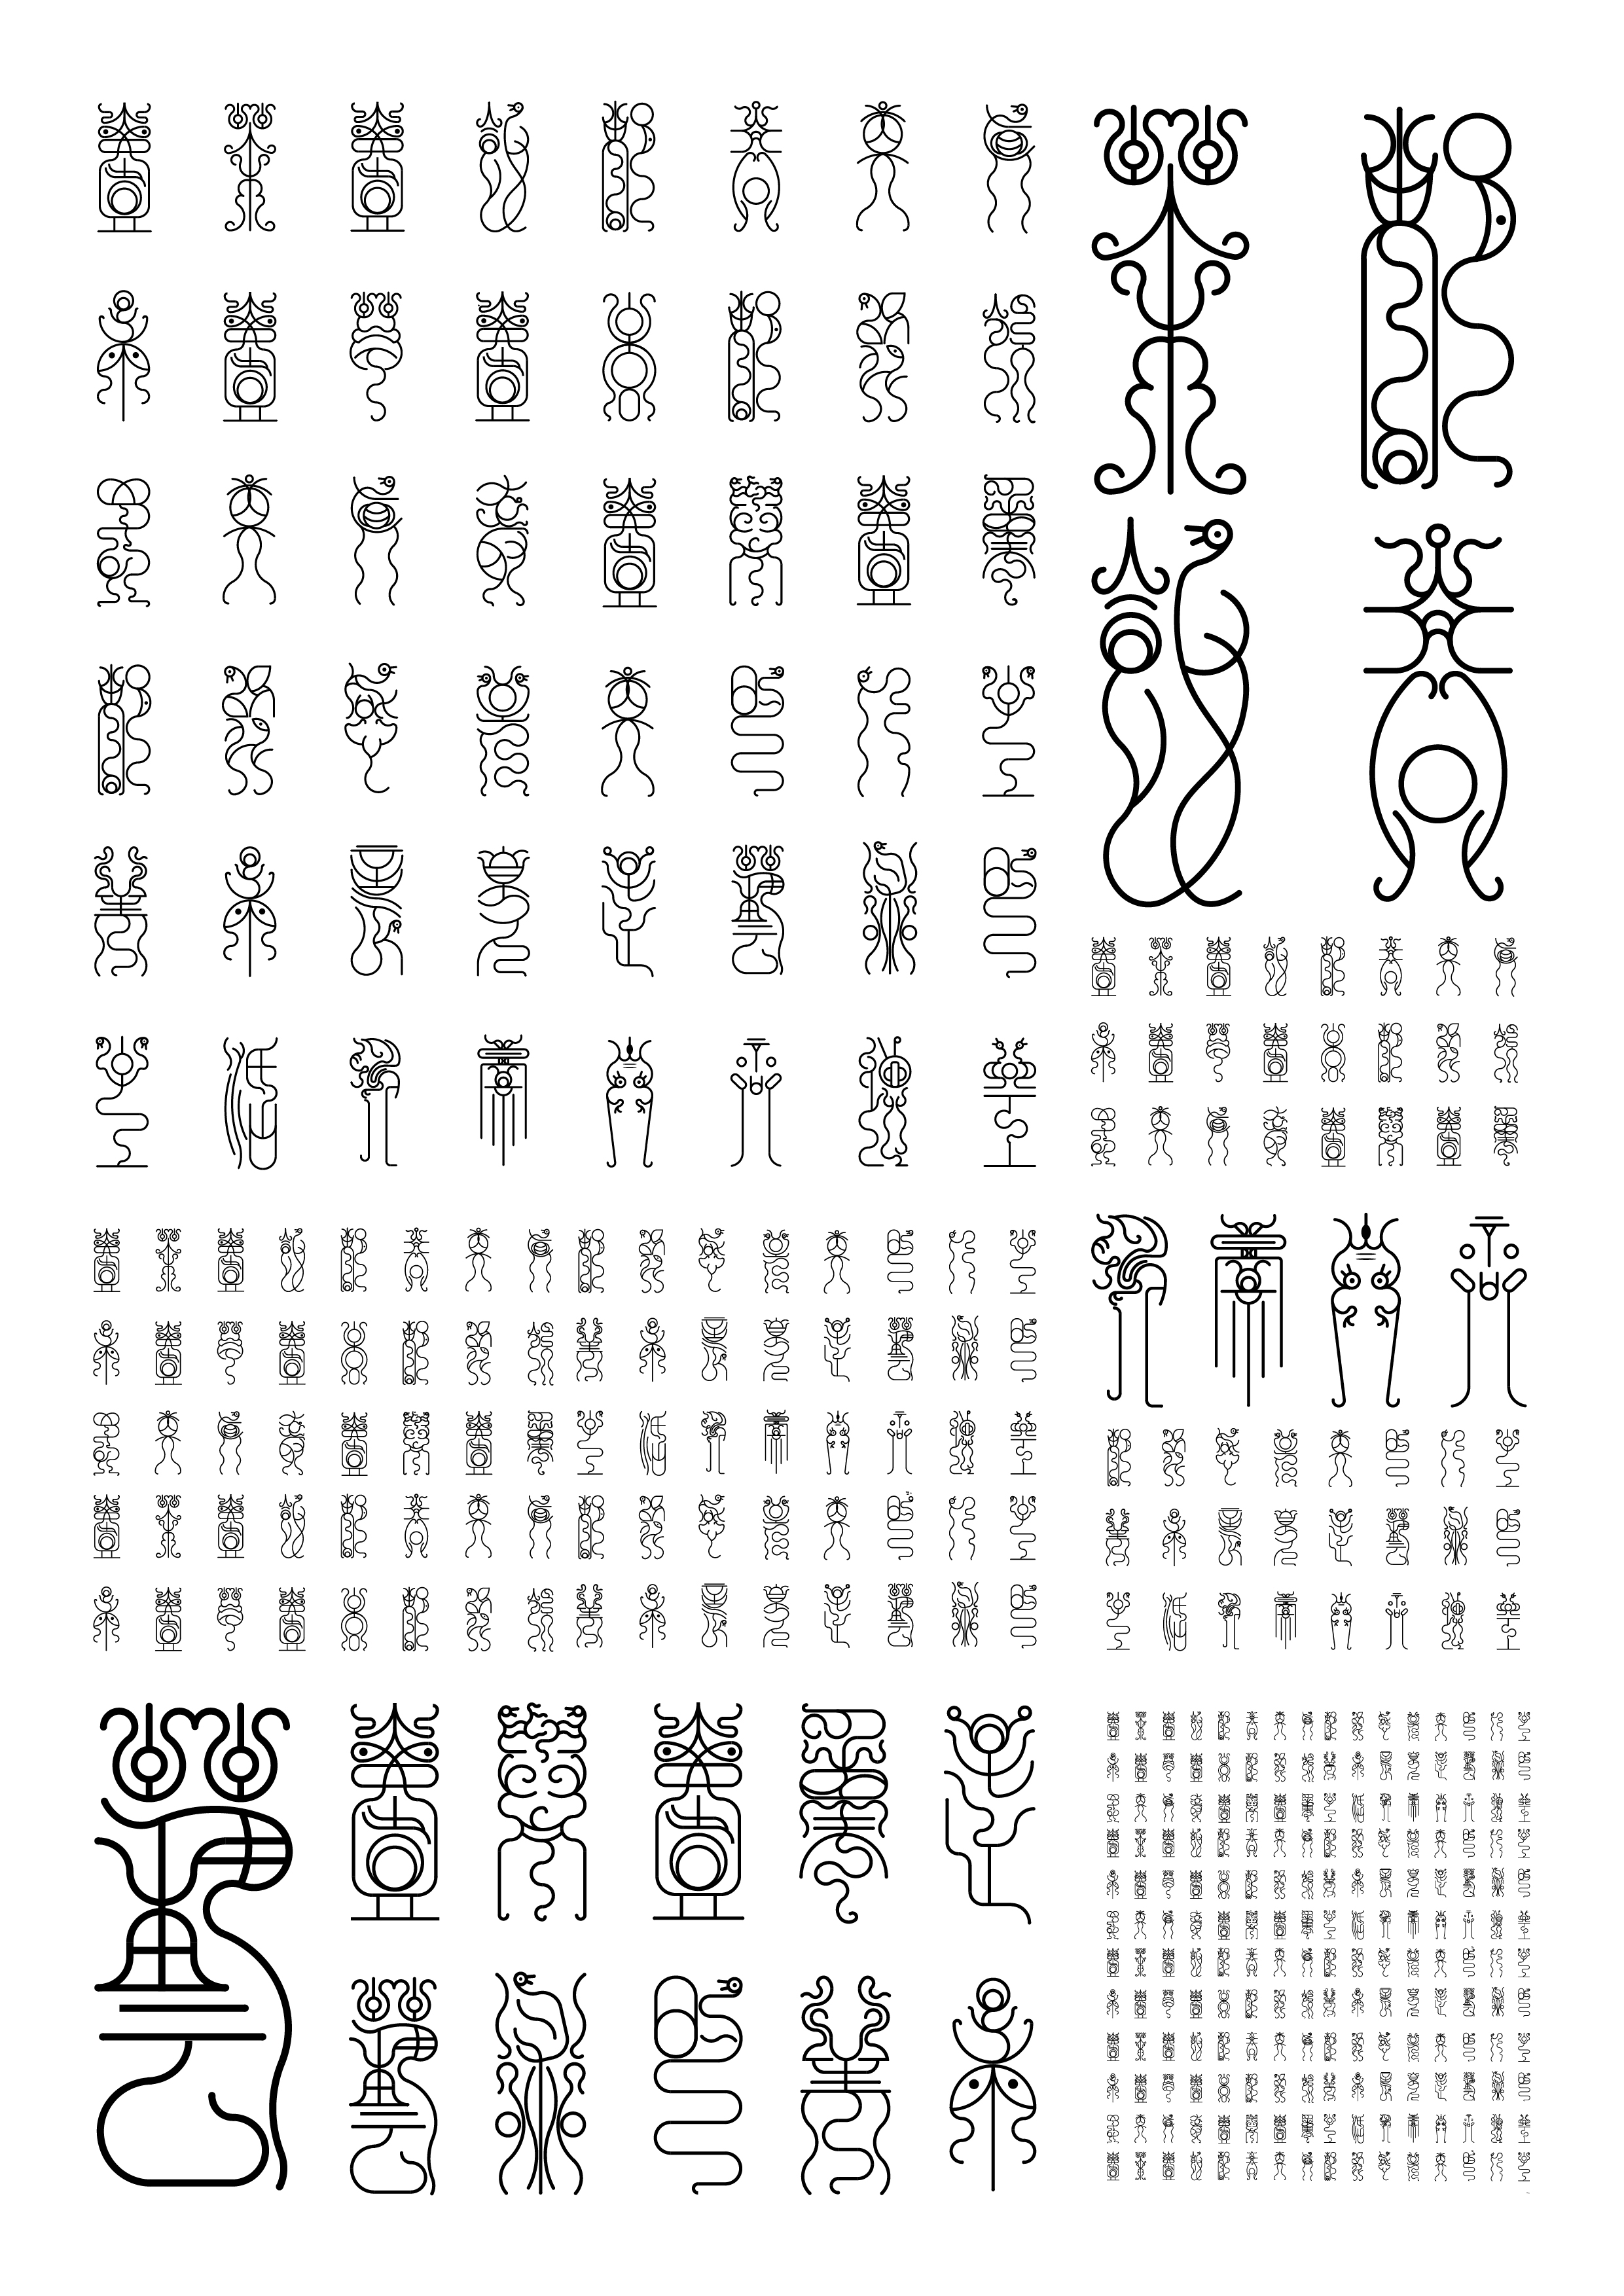 设计灵感来自古代艺术字鸟虫篆,在小篆体的基础上进行再设计,保留鸟虫